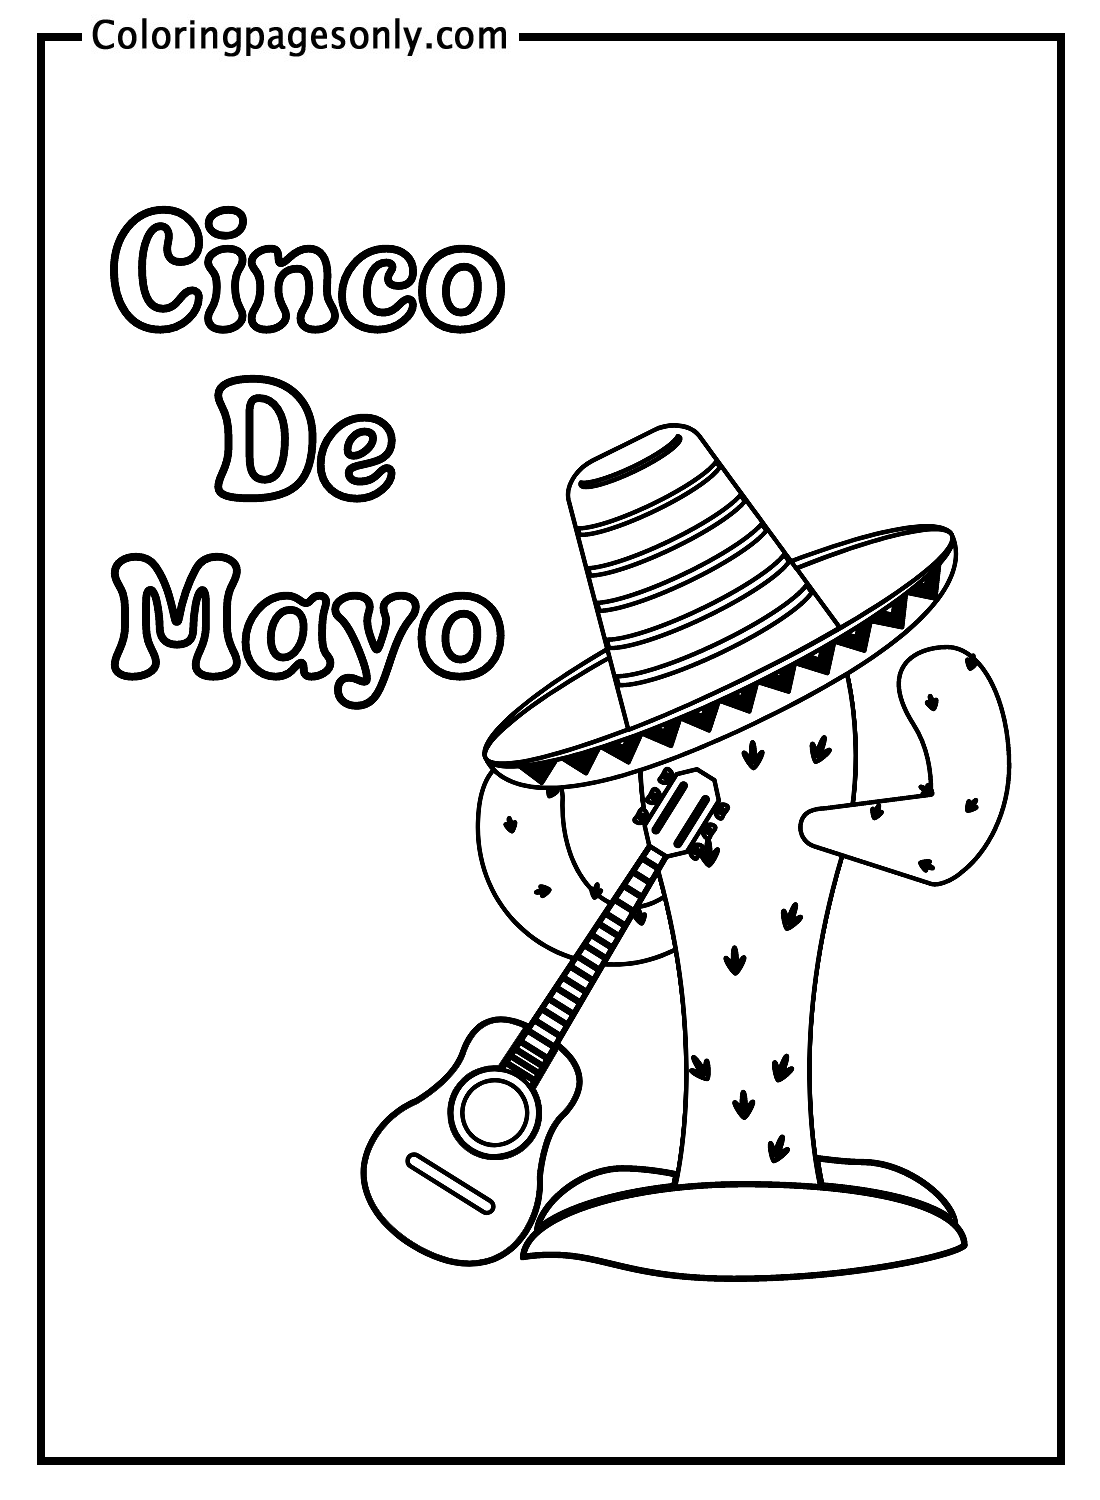 Kaktus und mexikanischer Hut mit Gitarre von Cinco De Mayo